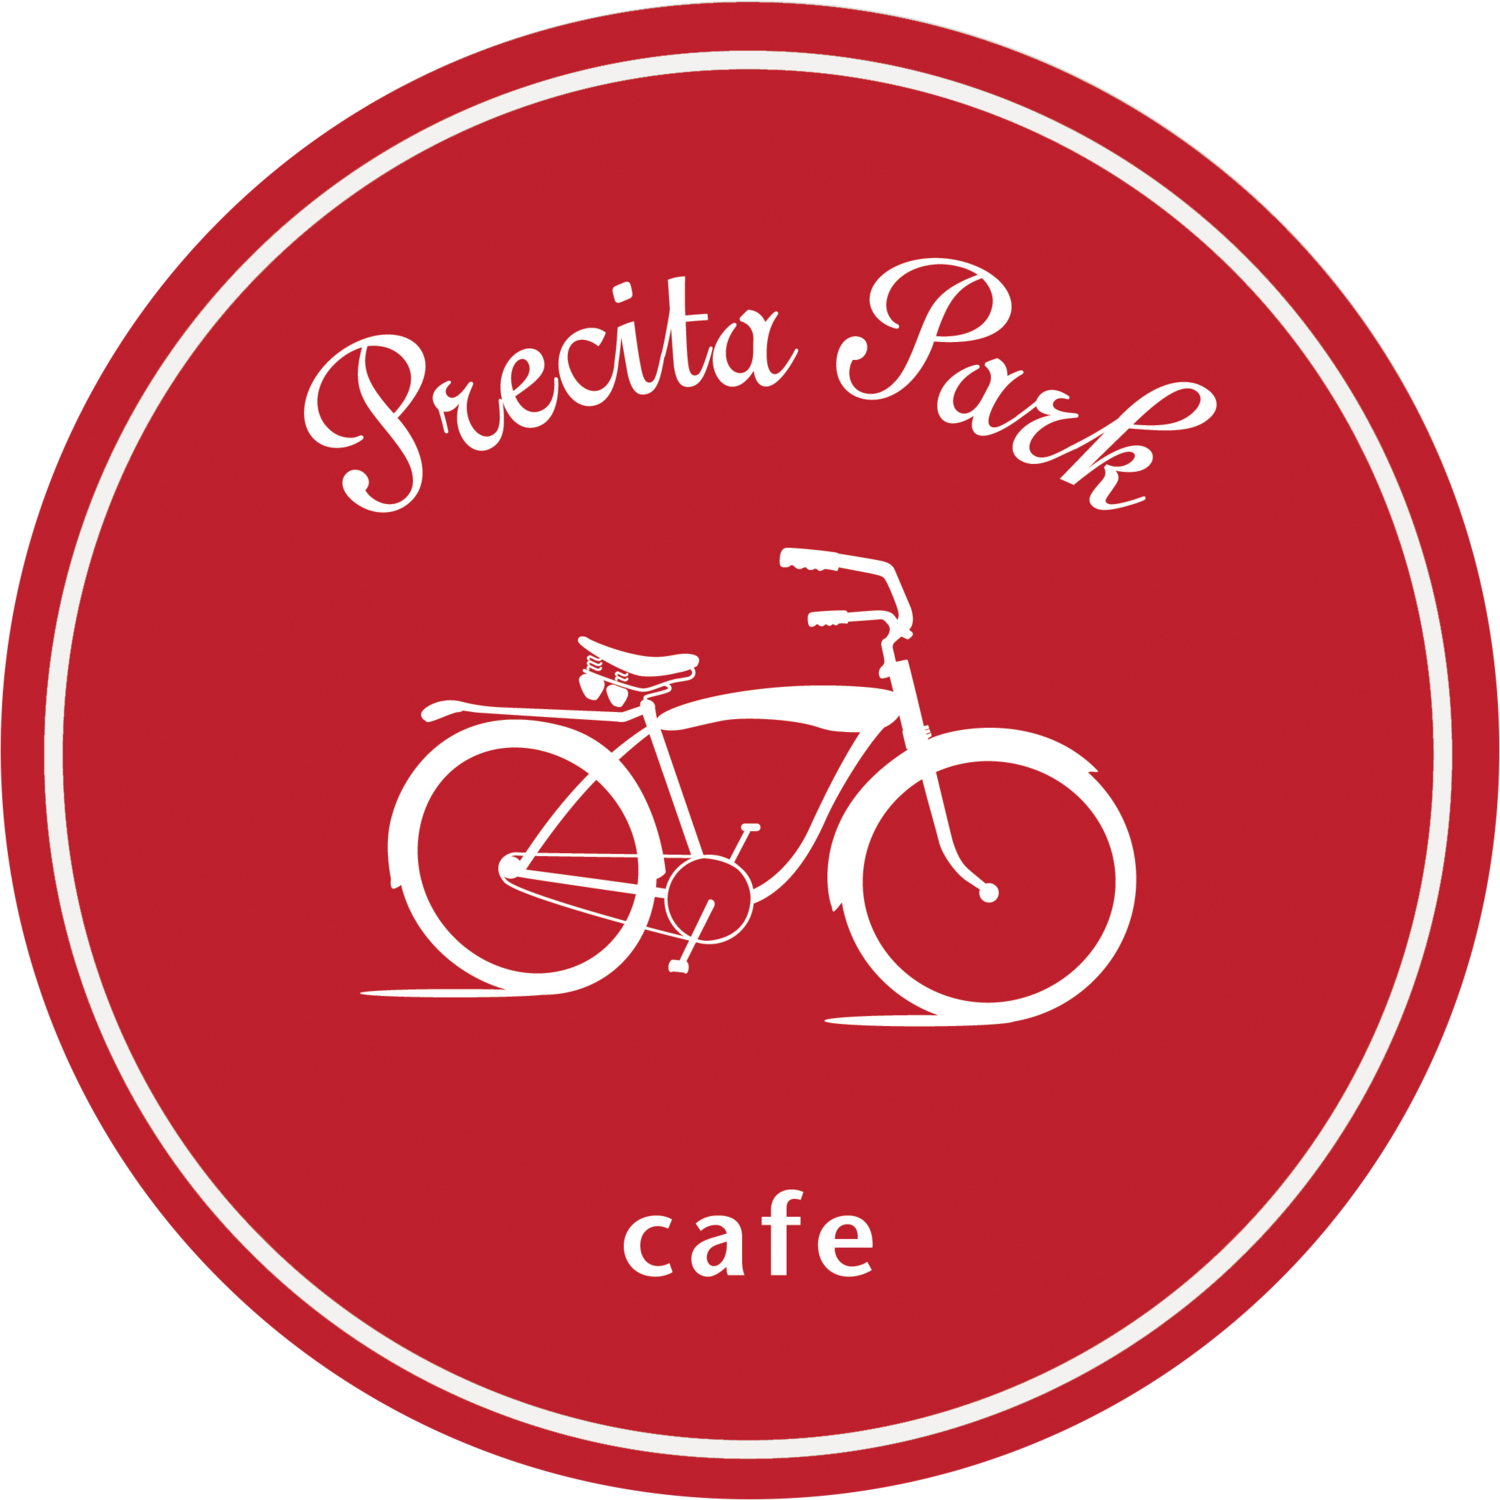 Precita Park Cafe & Grill